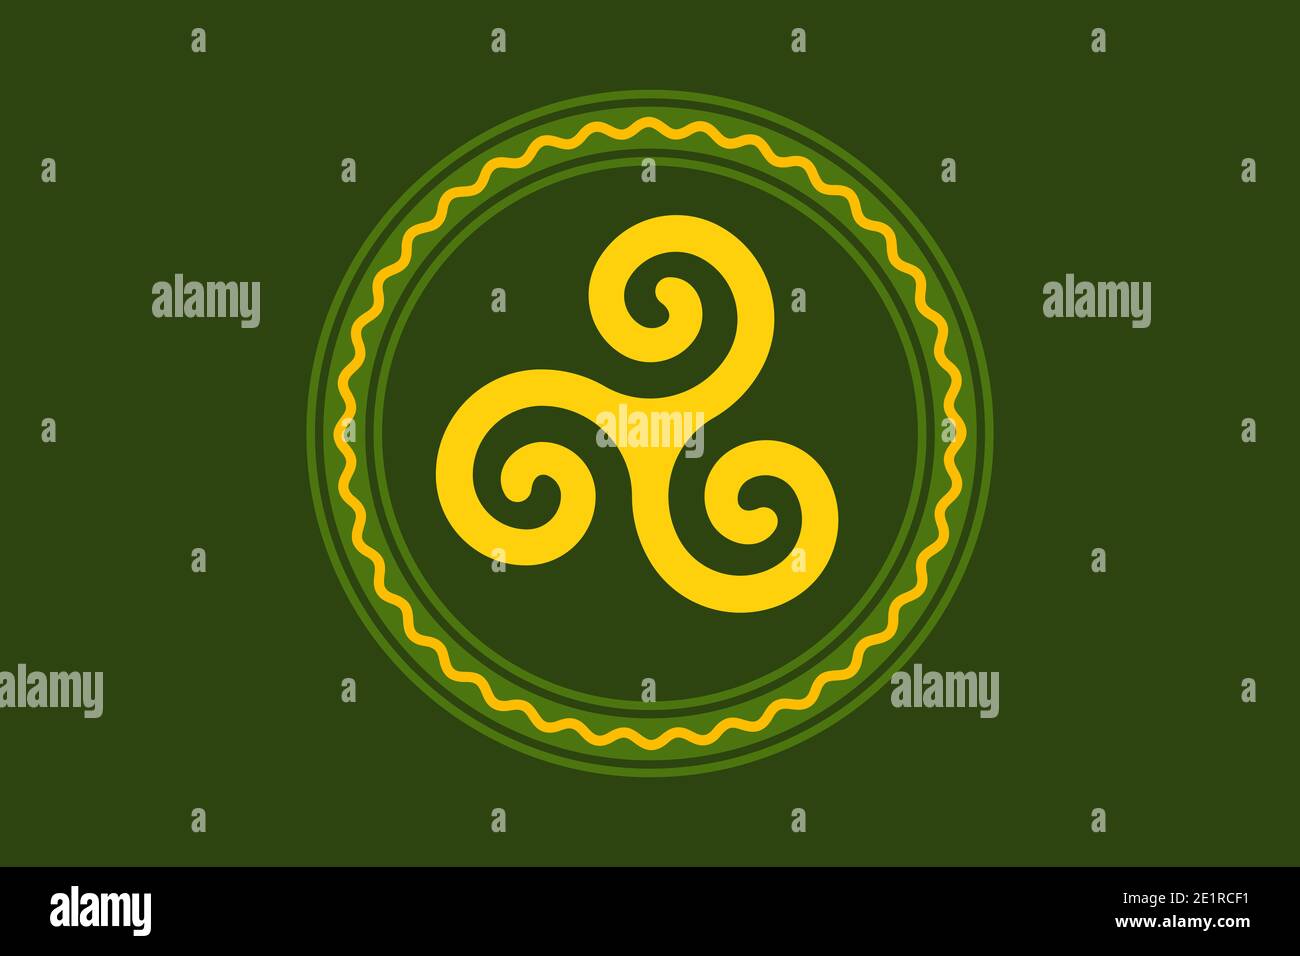 triskele jaune, dans un cercle vert avec une ligne de serpentine, sur le vert de mousse. Triskelion, ancien symbole et motif composé d'une triple spirale. Banque D'Images